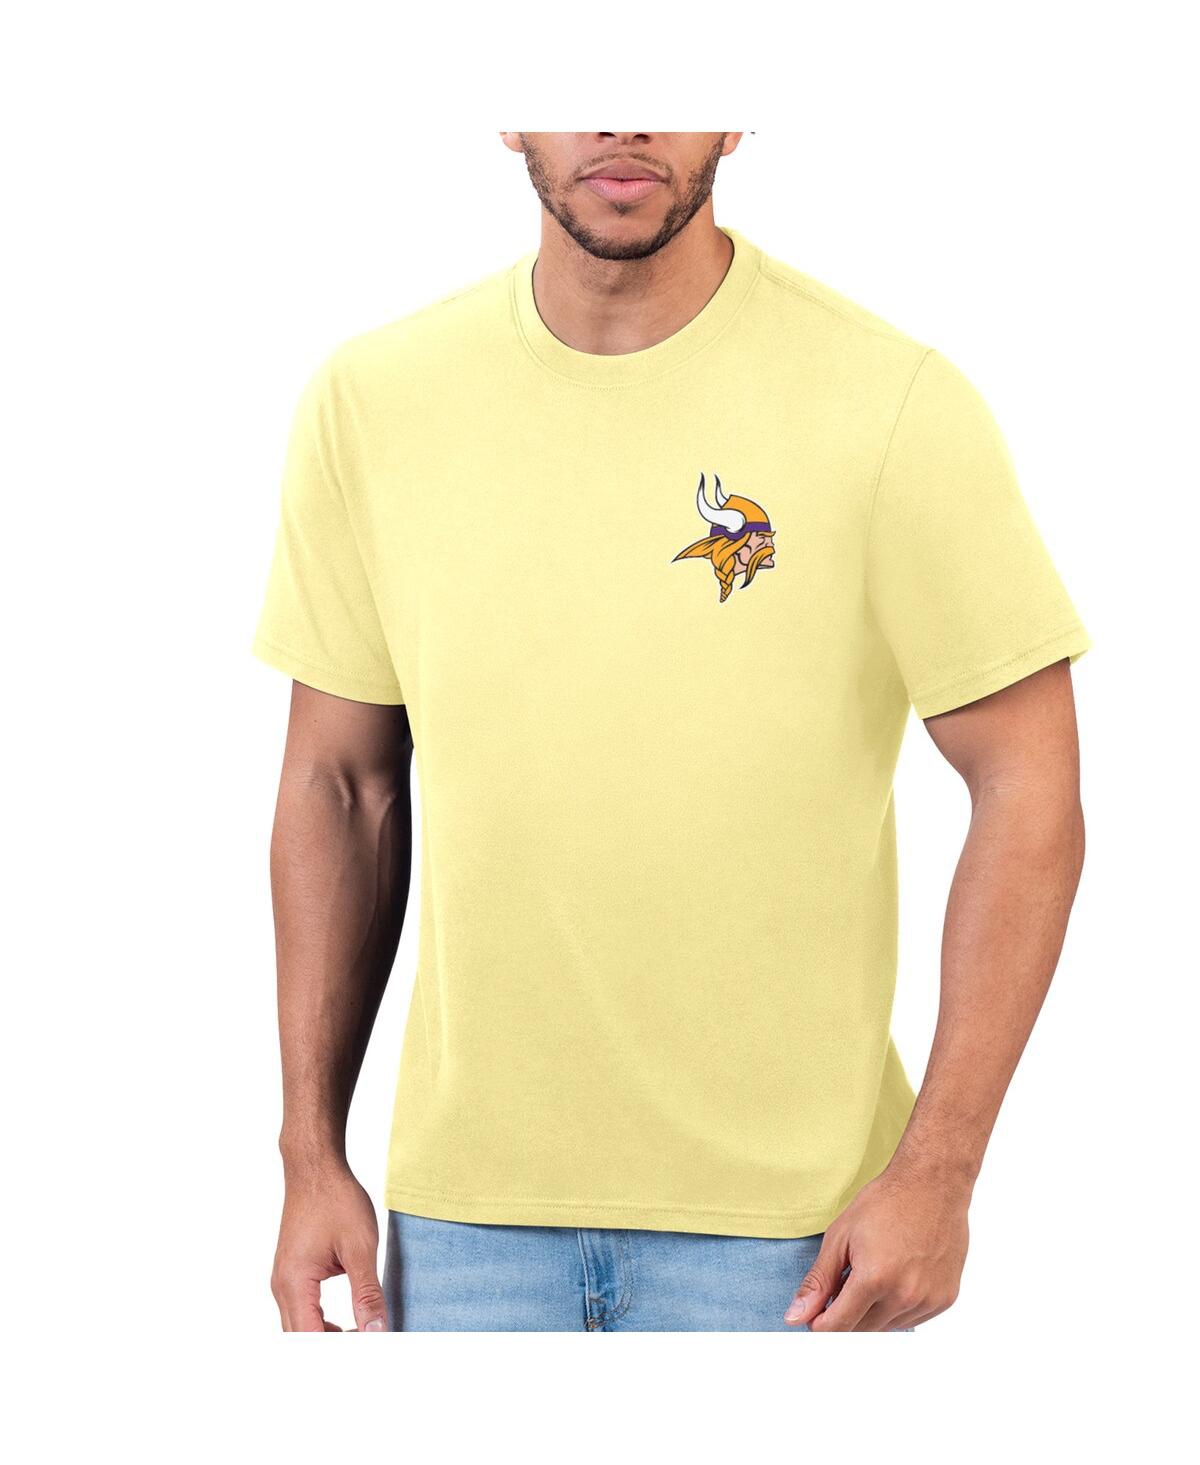 Men's Margaritaville Yellow Minnesota Vikings T-shirt - Yellow